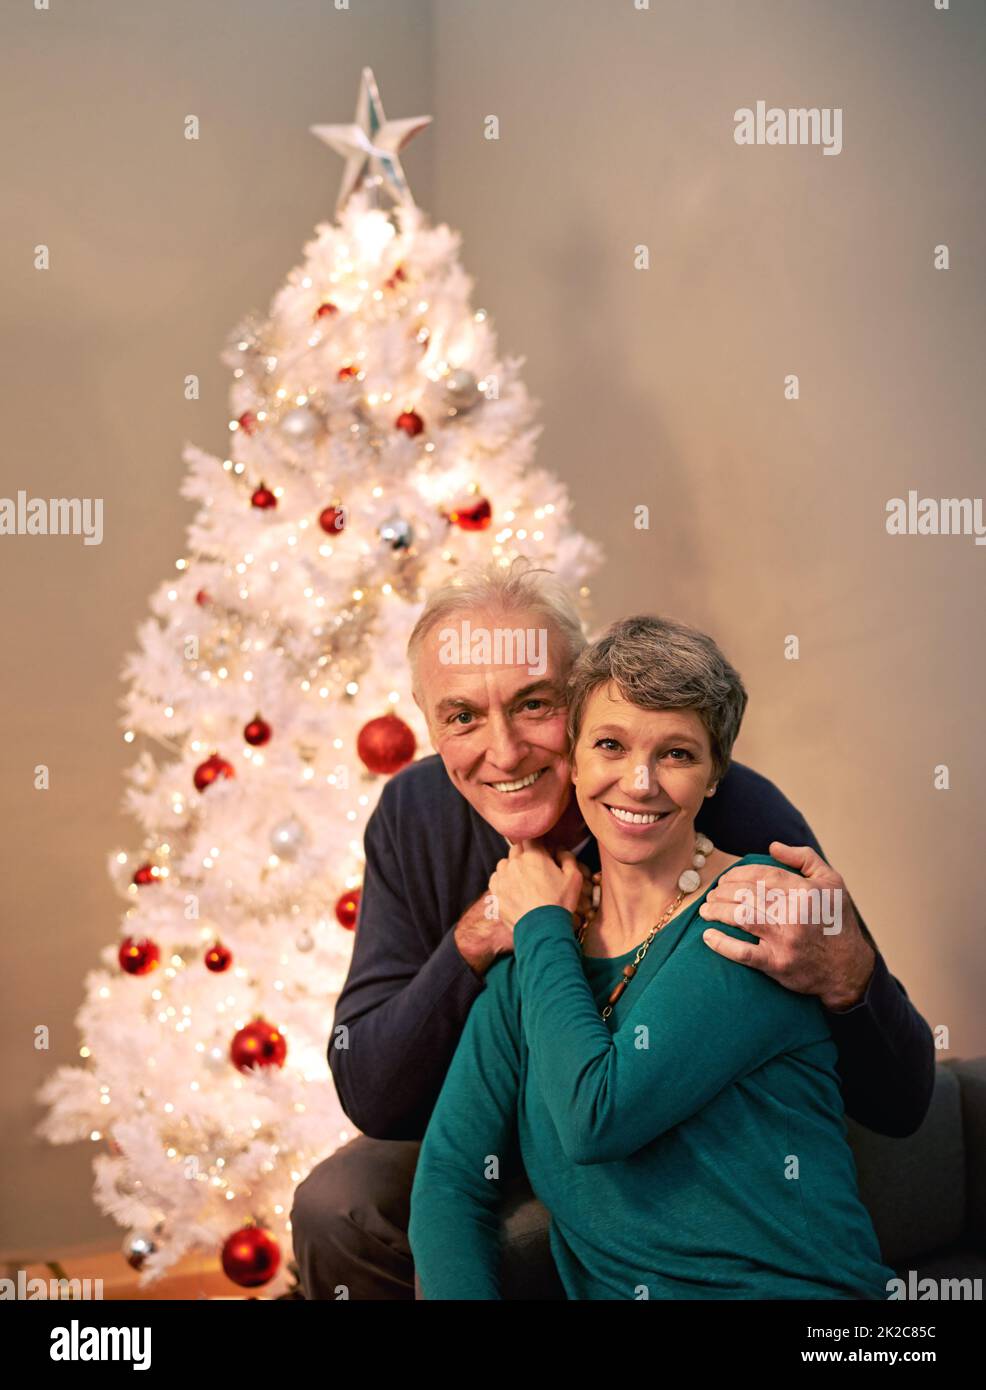 HES il regalo che chiedo a Santa per ogni Natale. Ritratto corto di una coppia matura felice accanto ad un albero di Natale. Foto Stock